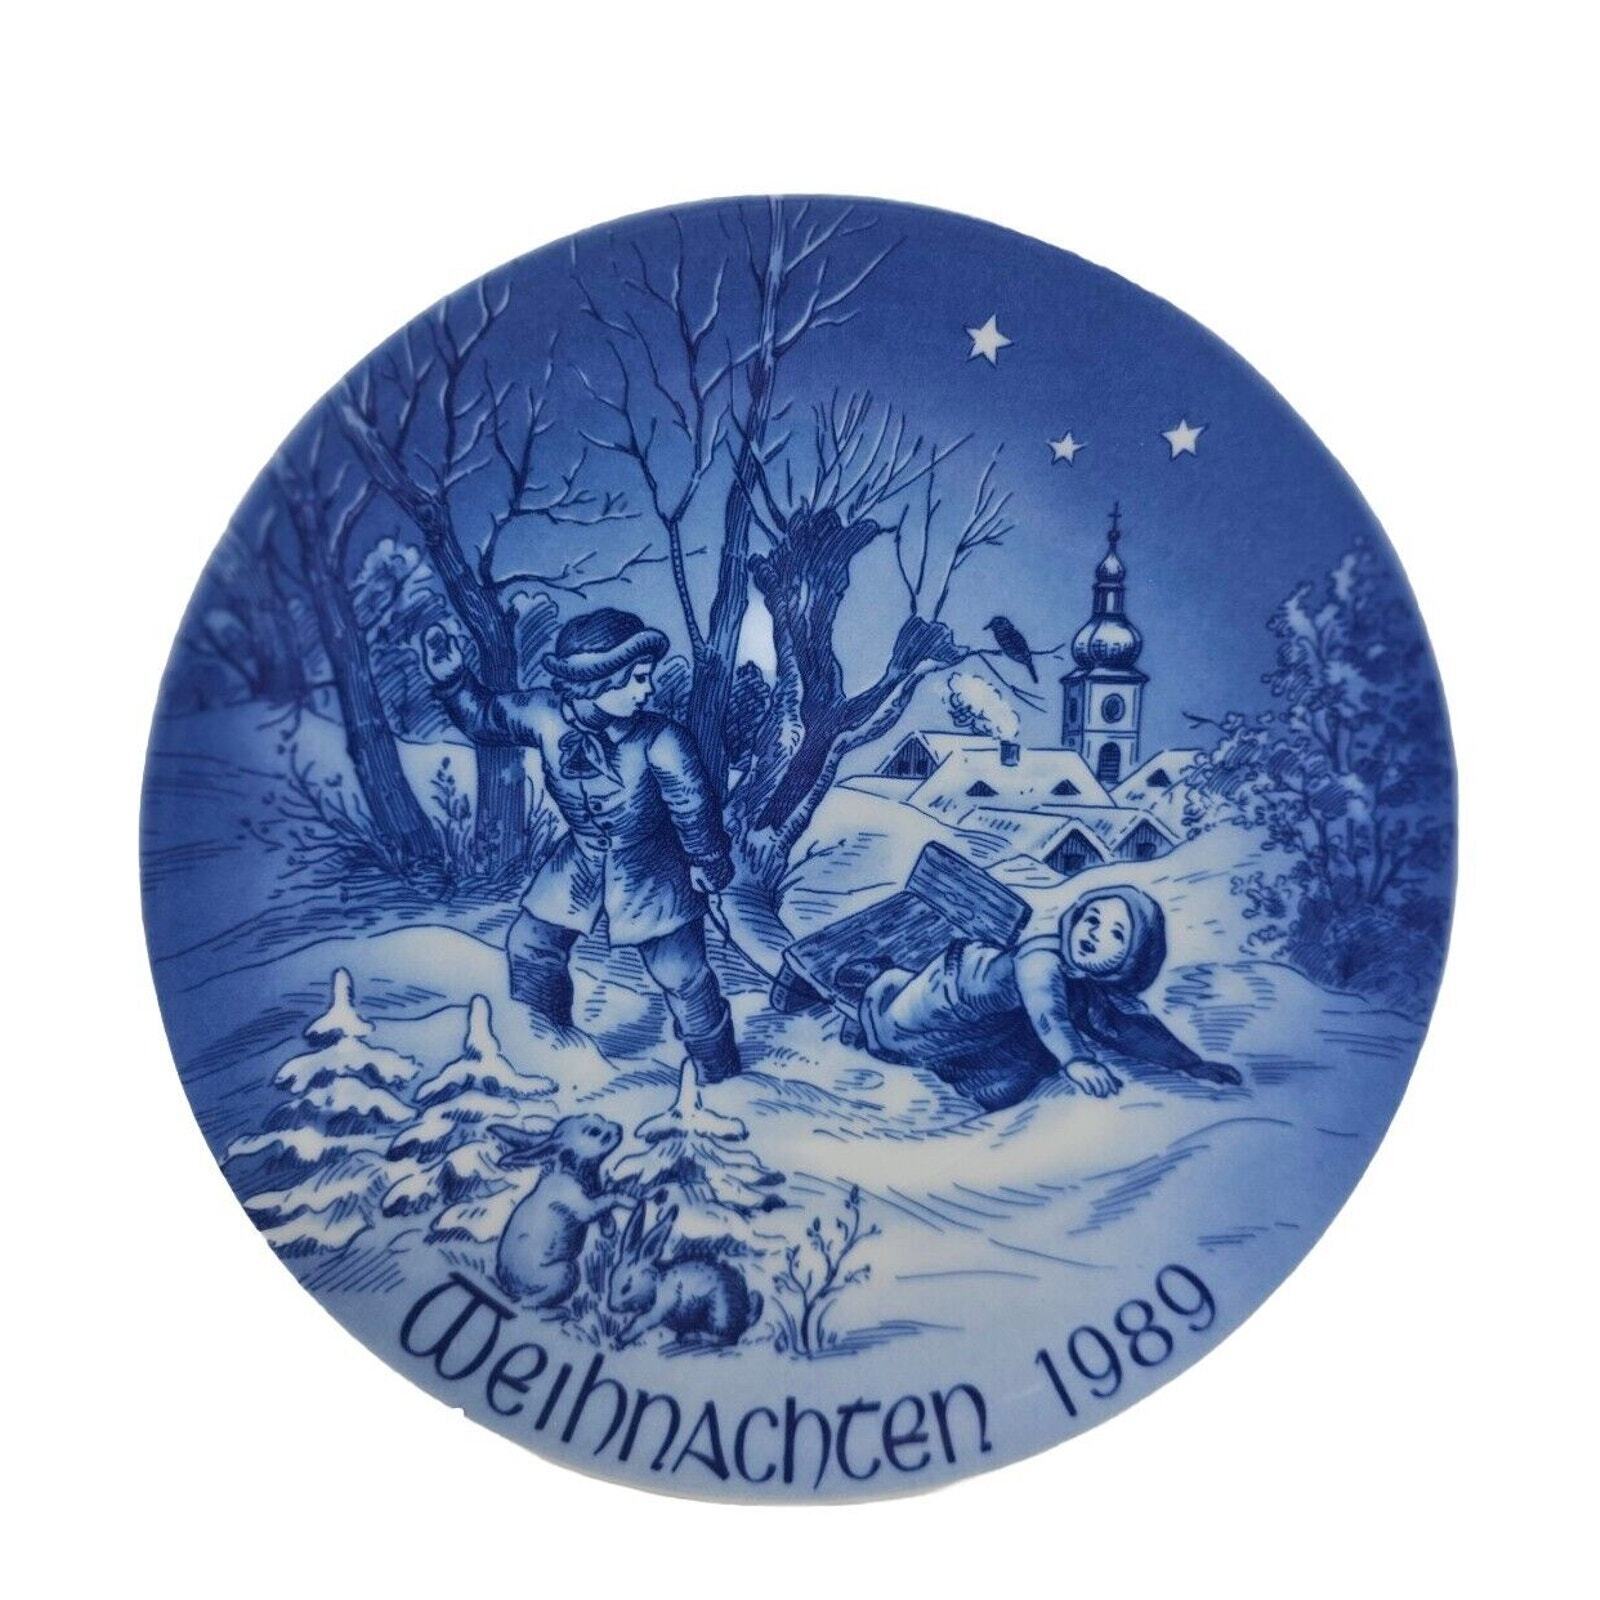 1989 Bareuther Weihnachten Christmas Plate Sleigh Ride Vtg German Decor